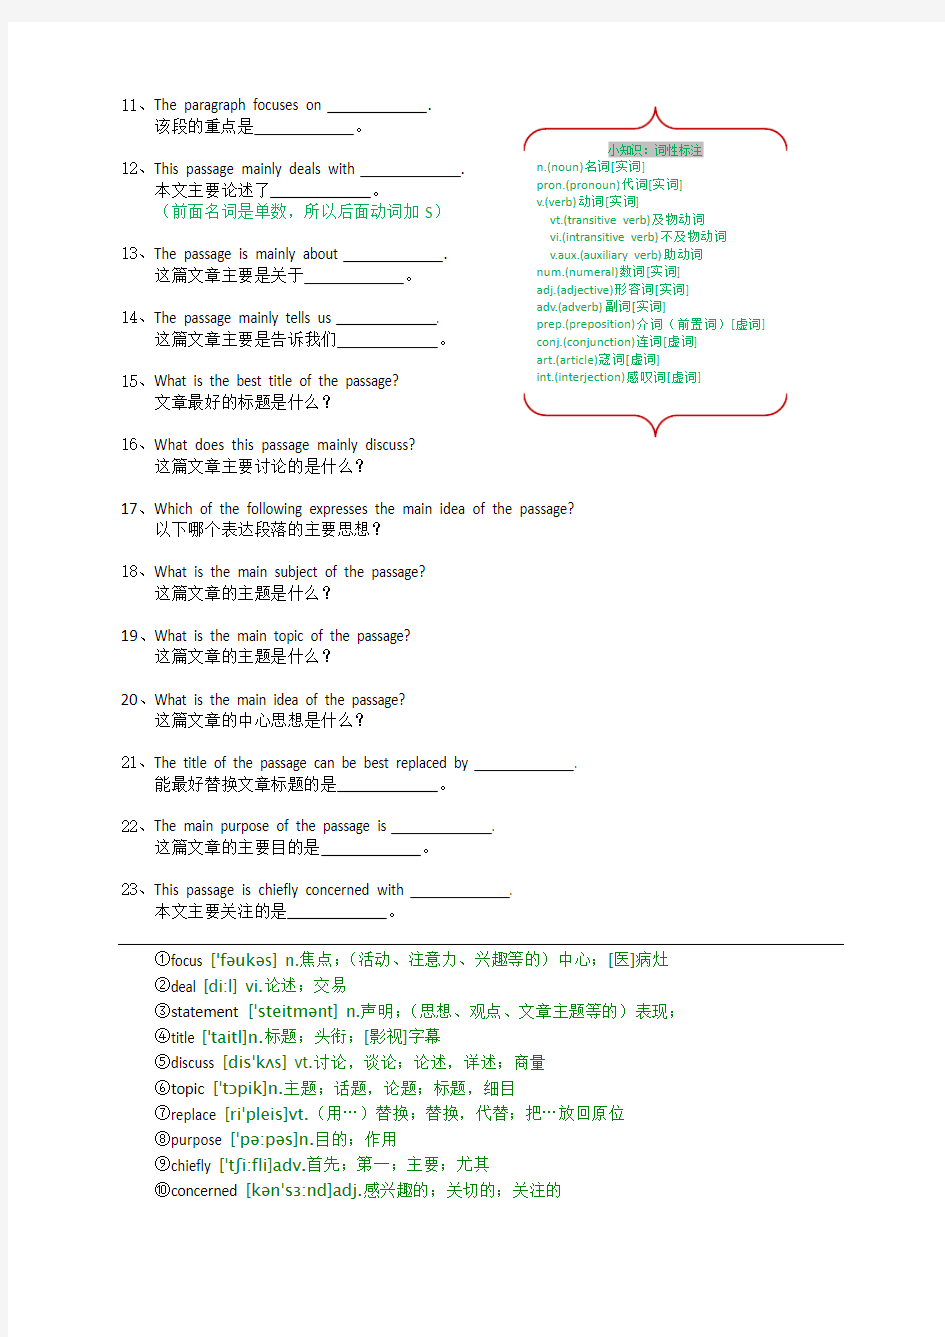 职称英语归纳大意部分常见提问方式的中文解释